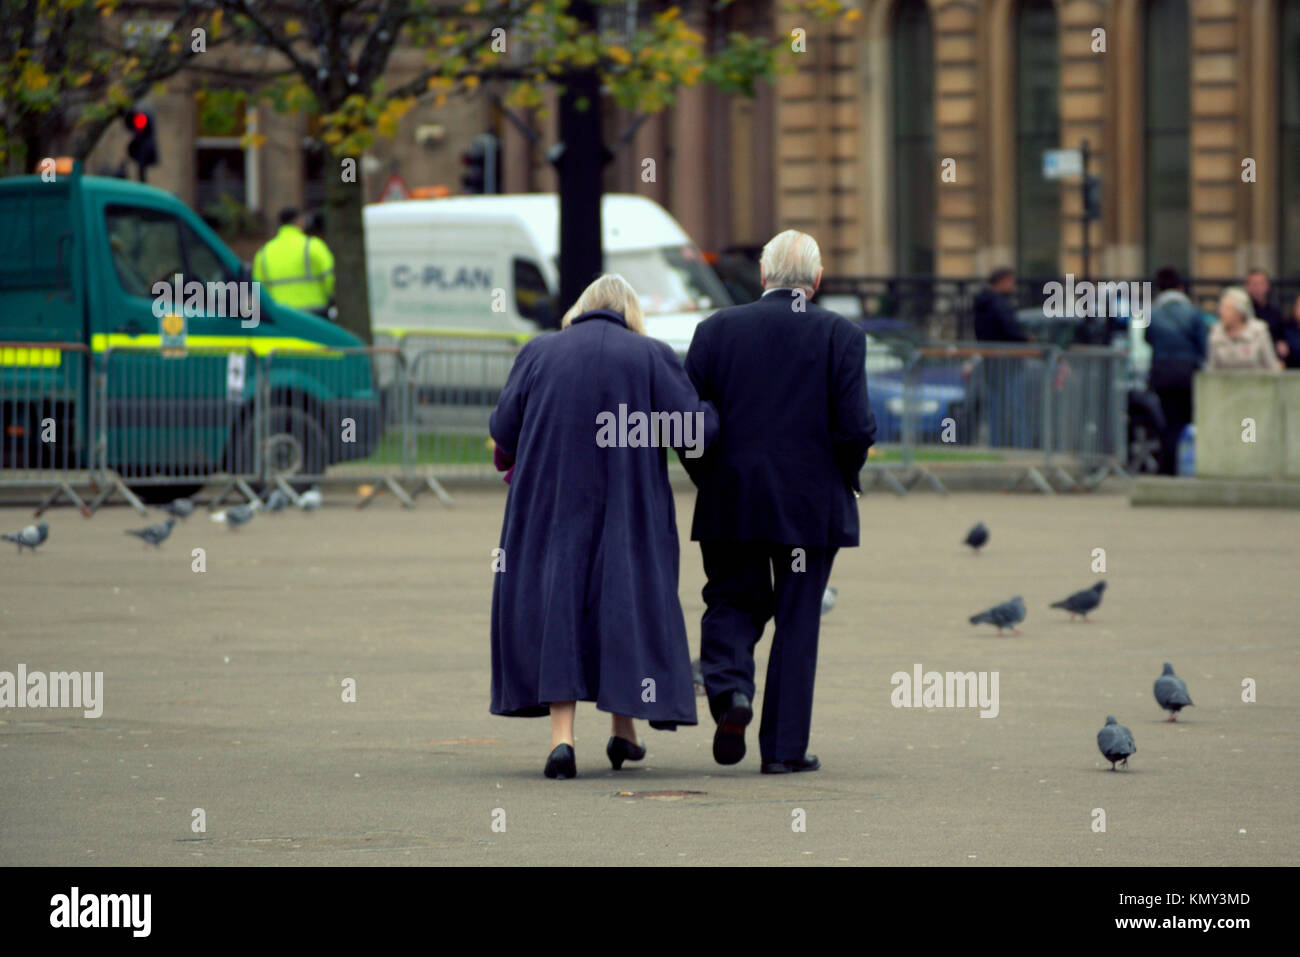 Pareja de ancianos ancianos hombre y mujer mujer vistiendo el azul marino a través de la plaza caminando entre las palomas visto desde detrás de George Square, Glasgow, Reino Unido Foto de stock